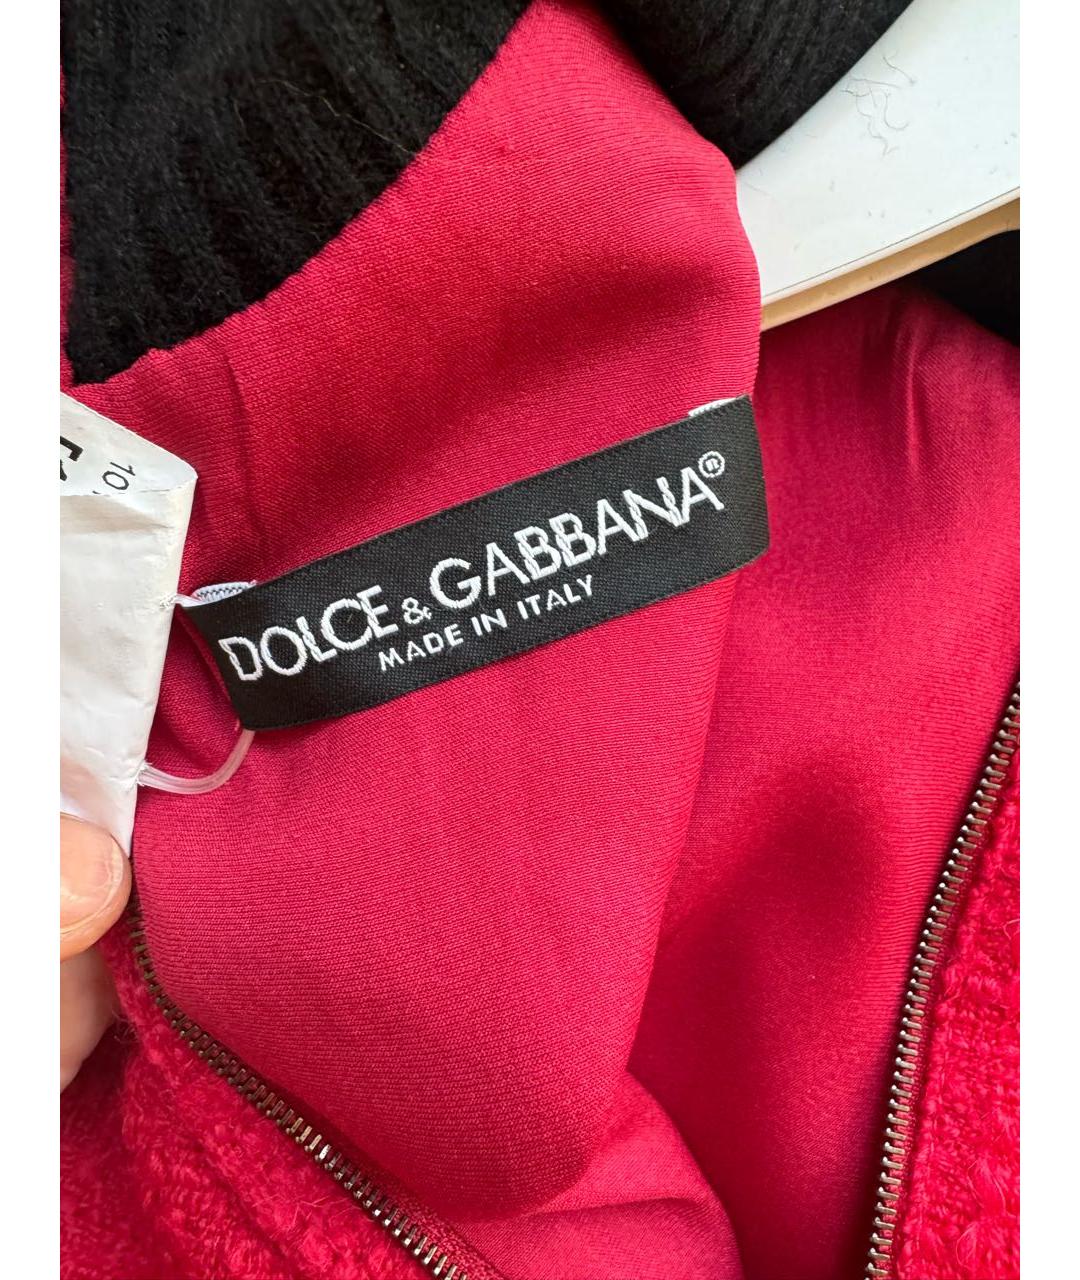 DOLCE&GABBANA Красное шерстяное повседневное платье, фото 3